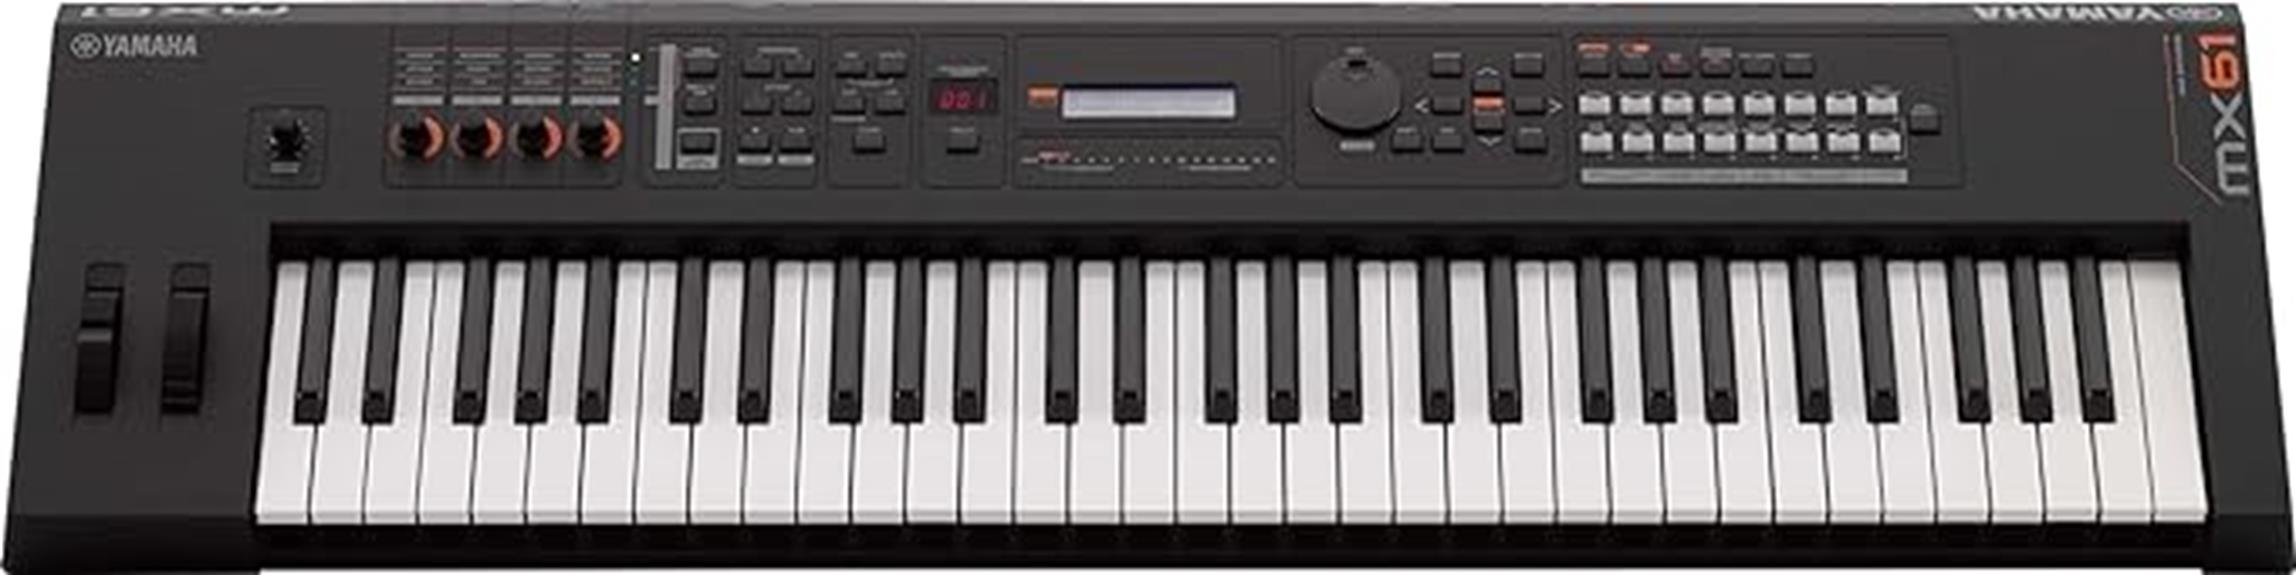 yamaha mx61 synthesizer 61 key